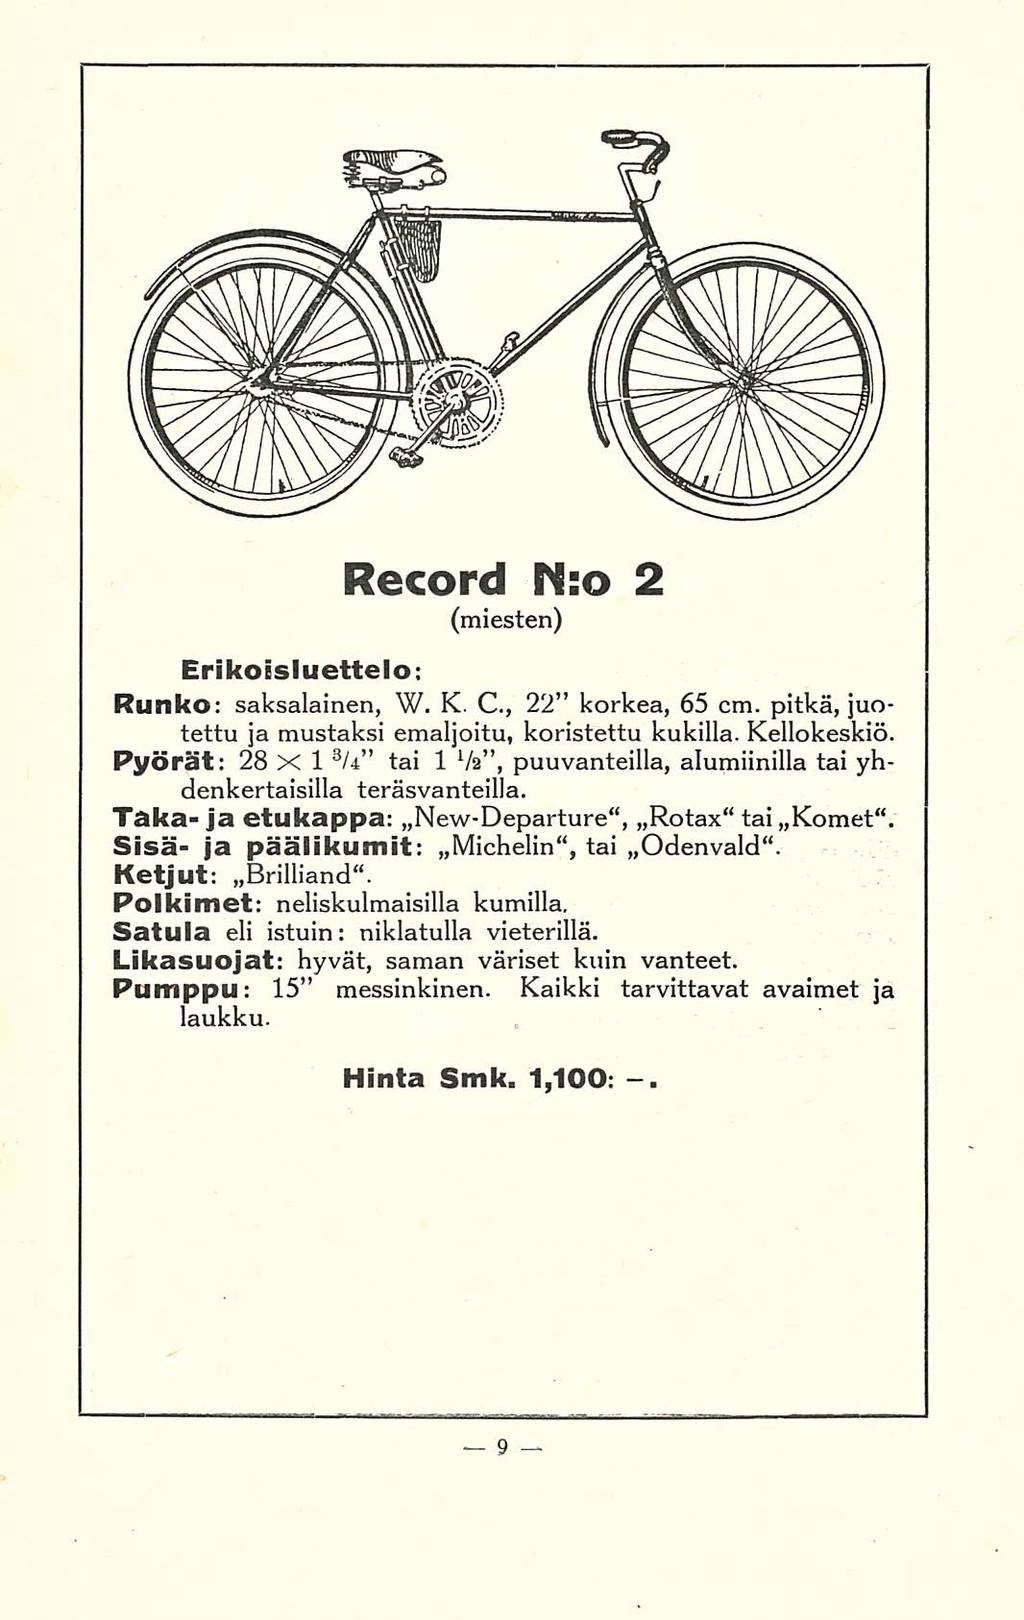 Record N:o 2 (miesten) Erikoisluettelo; Runko: saksalainen, W. K. C., 22 korkea, 65 cm. pitkä, juotettu ja mustaksi emaljoitu, koristettu kukilla. Kellokeskiö.